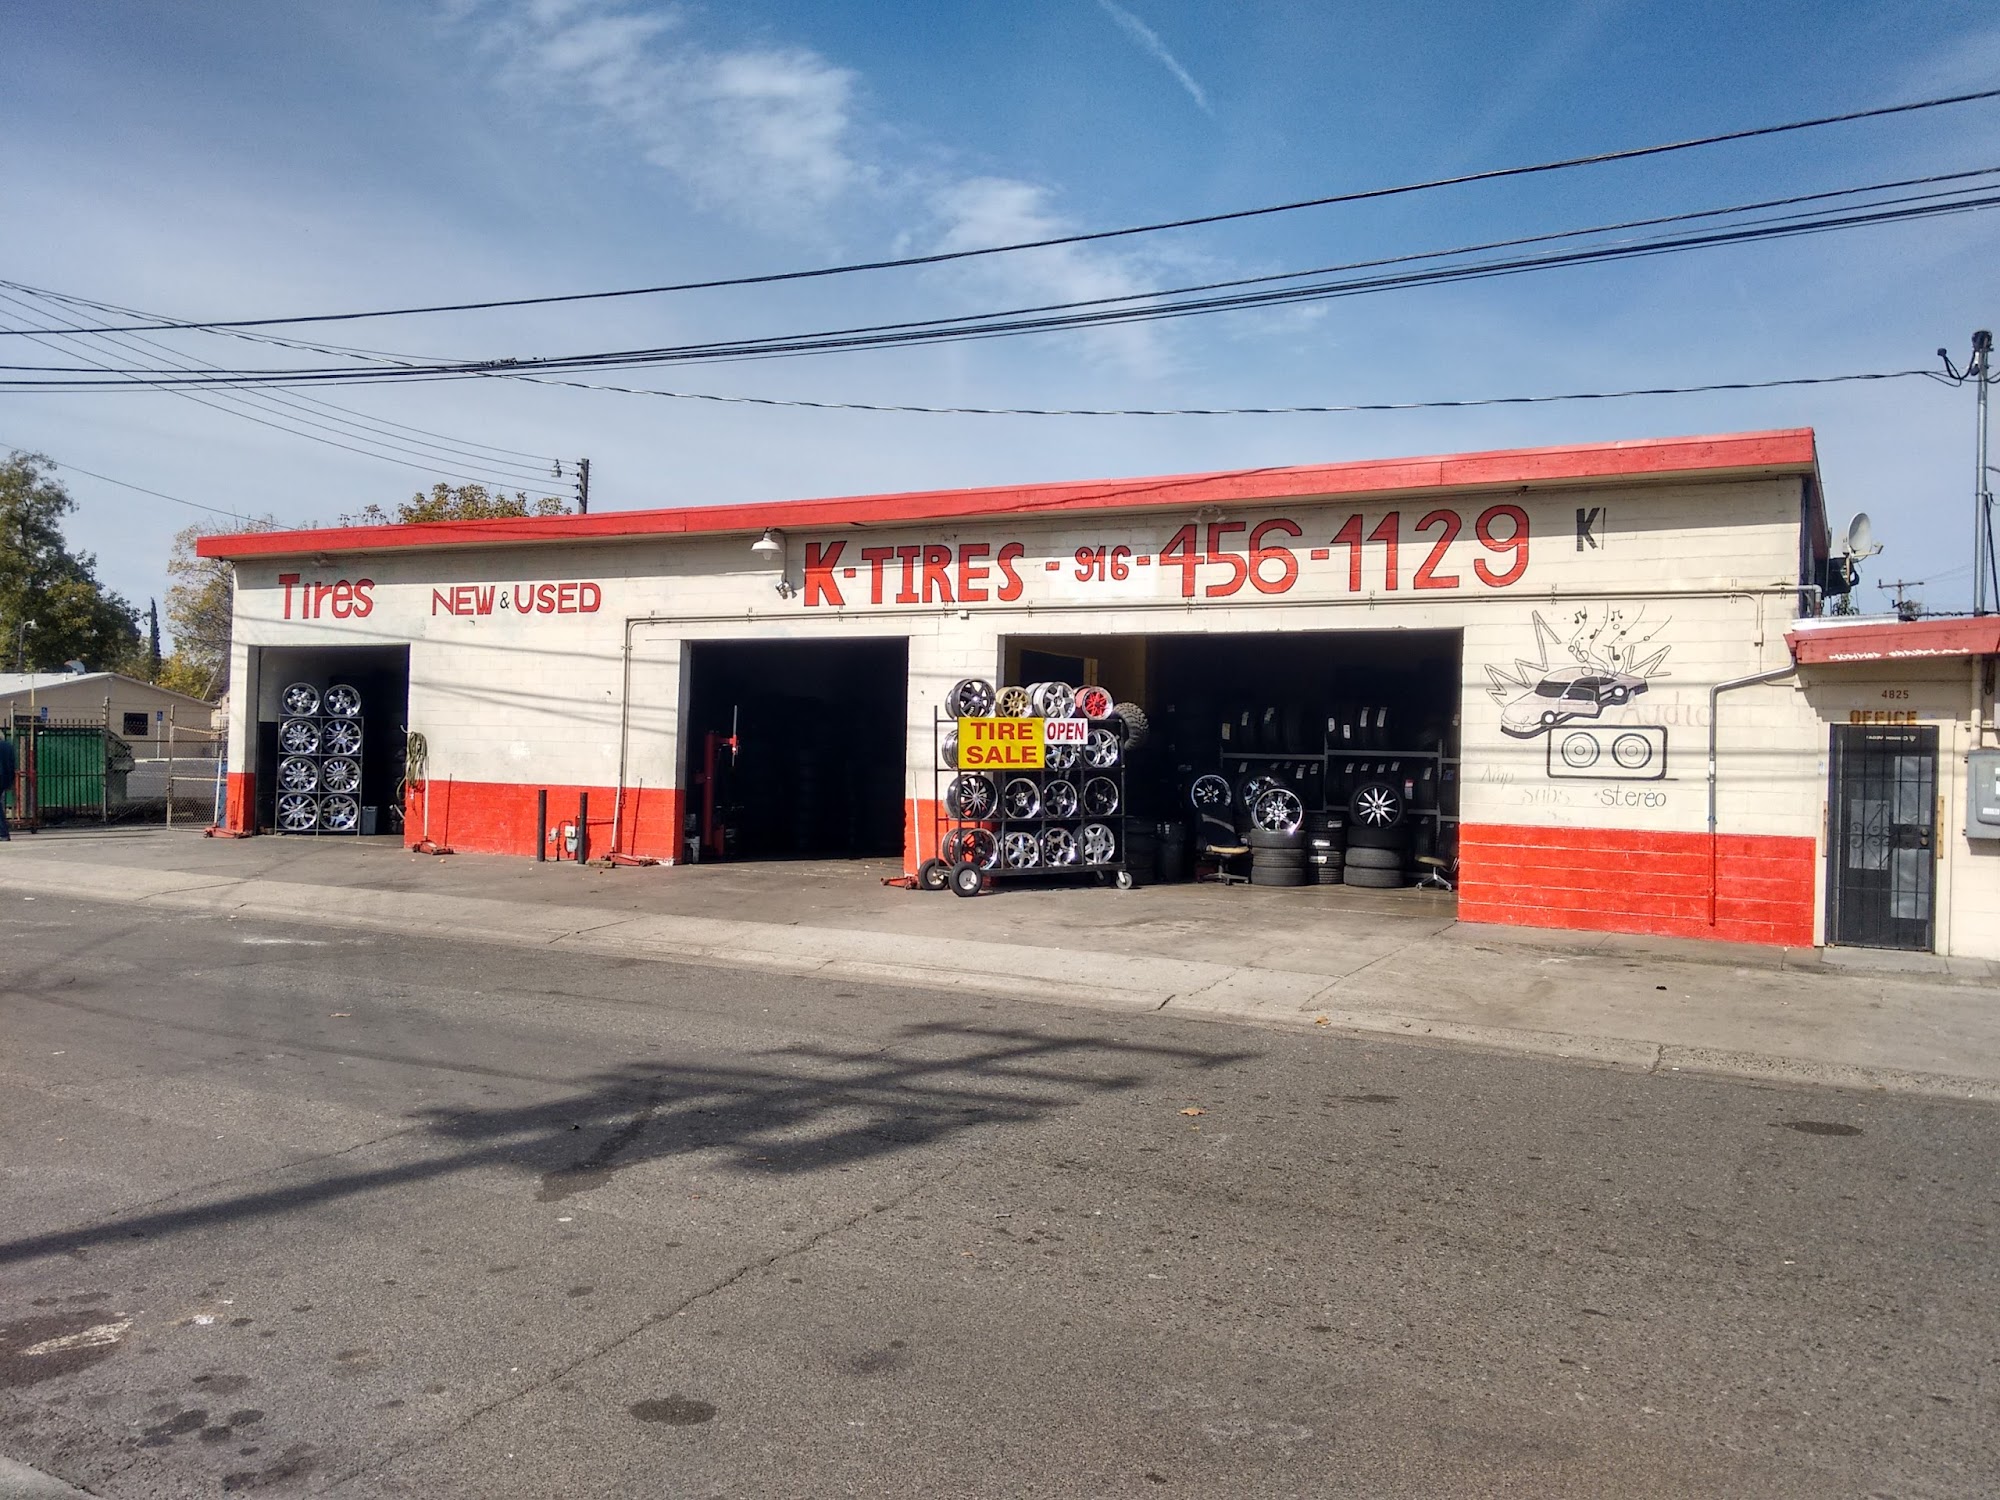 K Tires & Minor Auto Repair